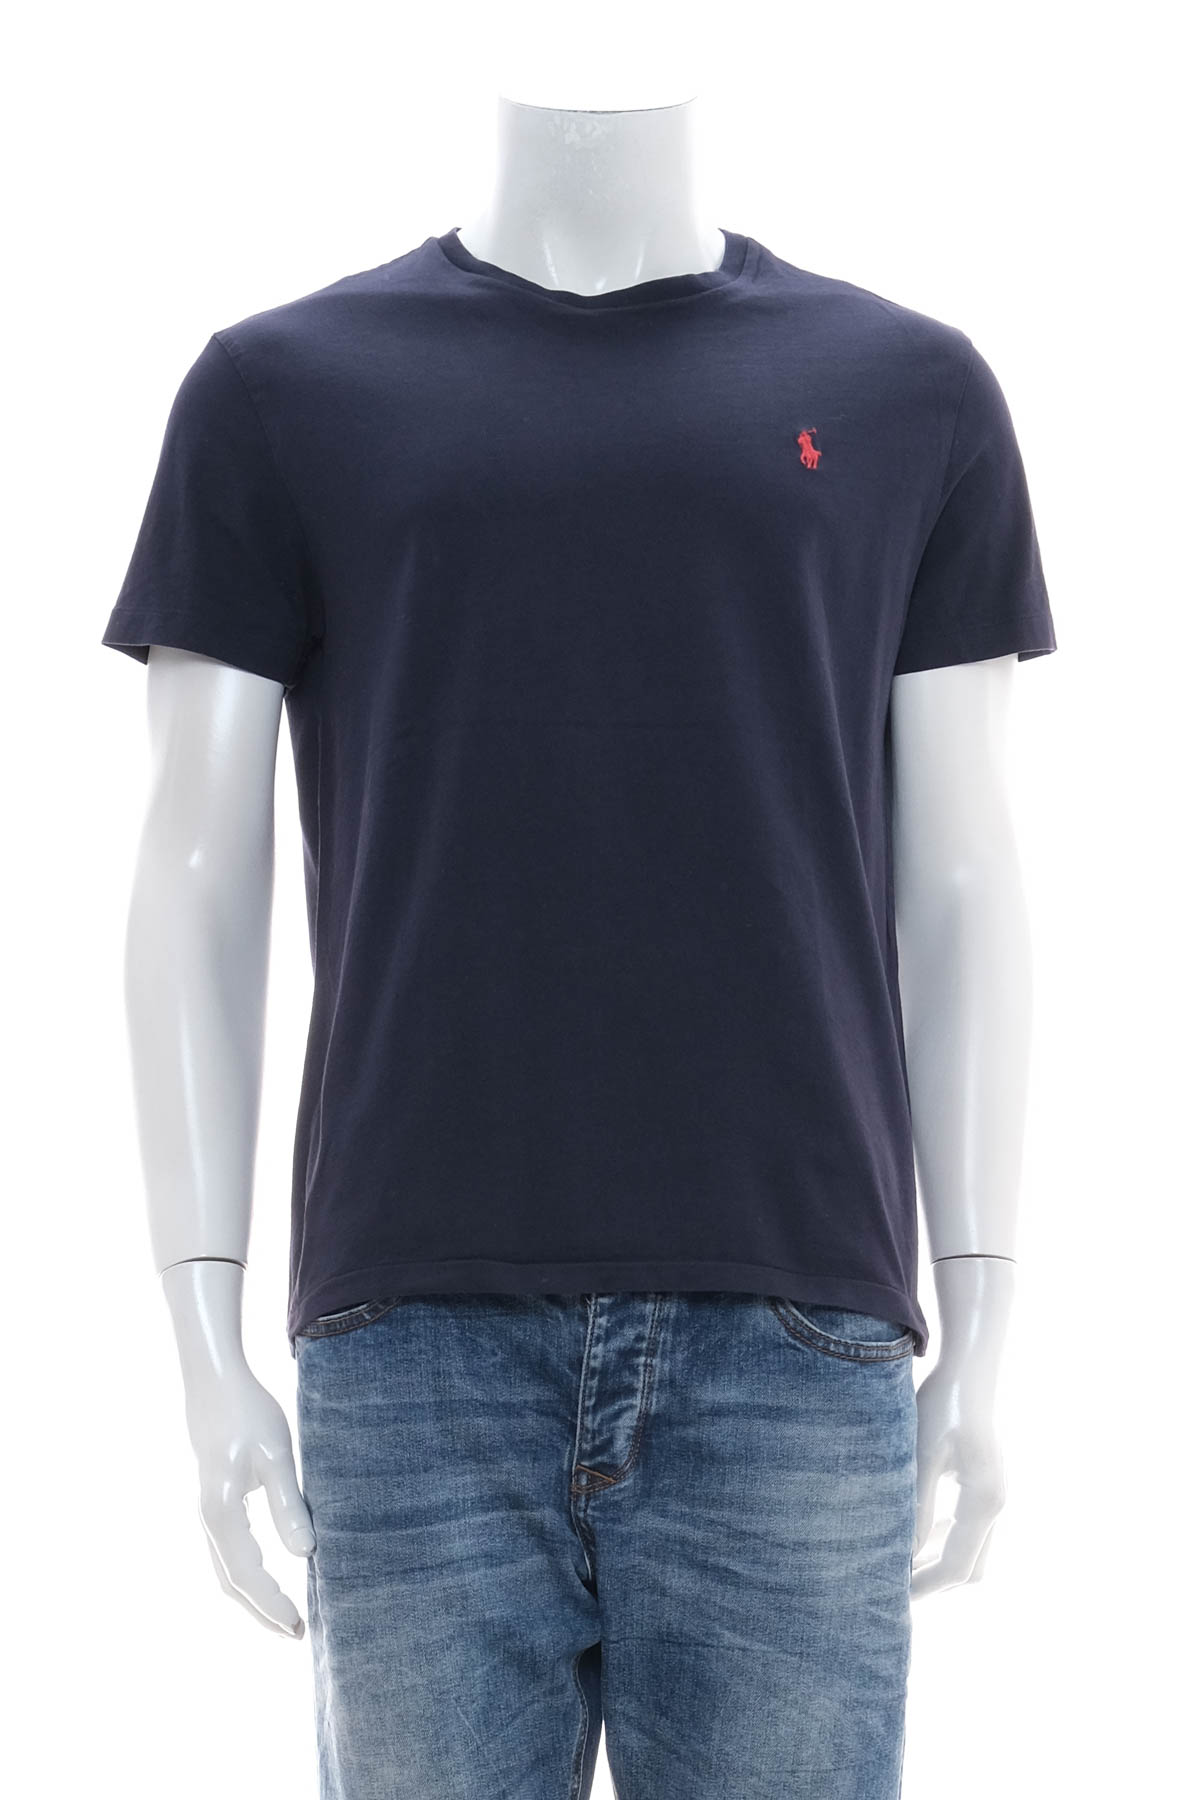 Αντρική μπλούζα - Ralph Lauren - 0